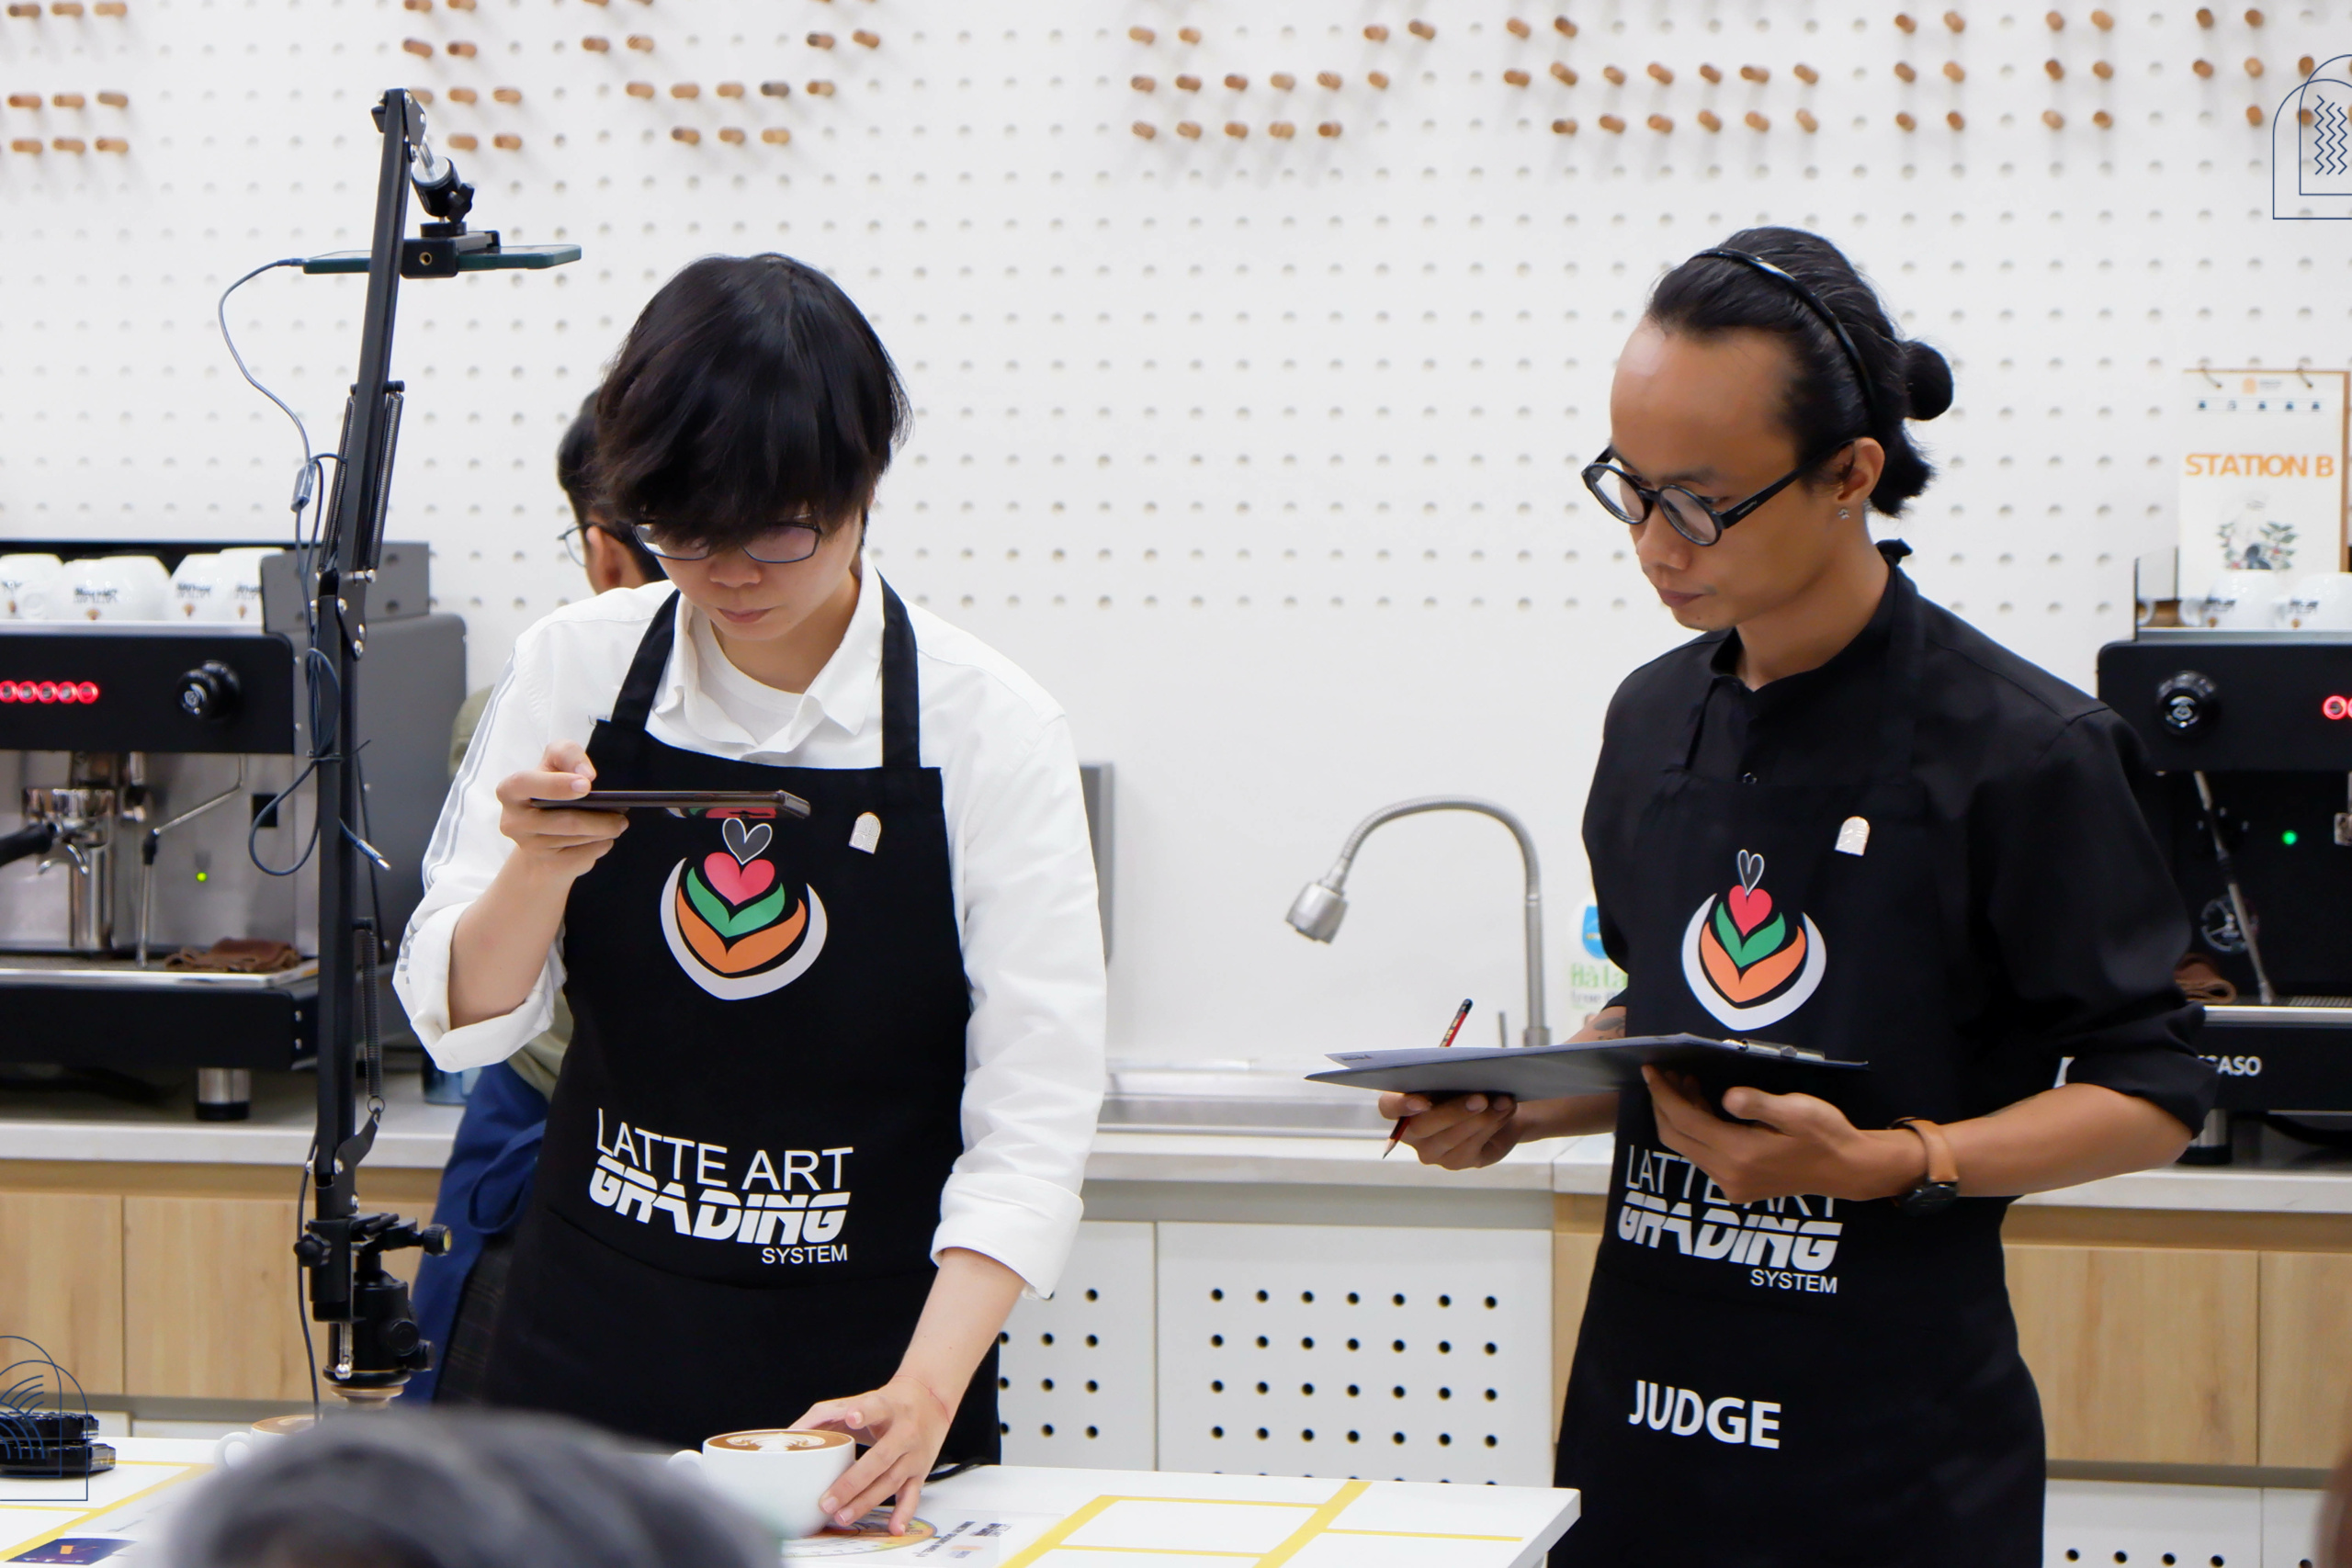 Hé lộ 3 đại diện Việt Nam tham dự đấu trường Latte Art quốc tế 2023 tại Milan - Italy